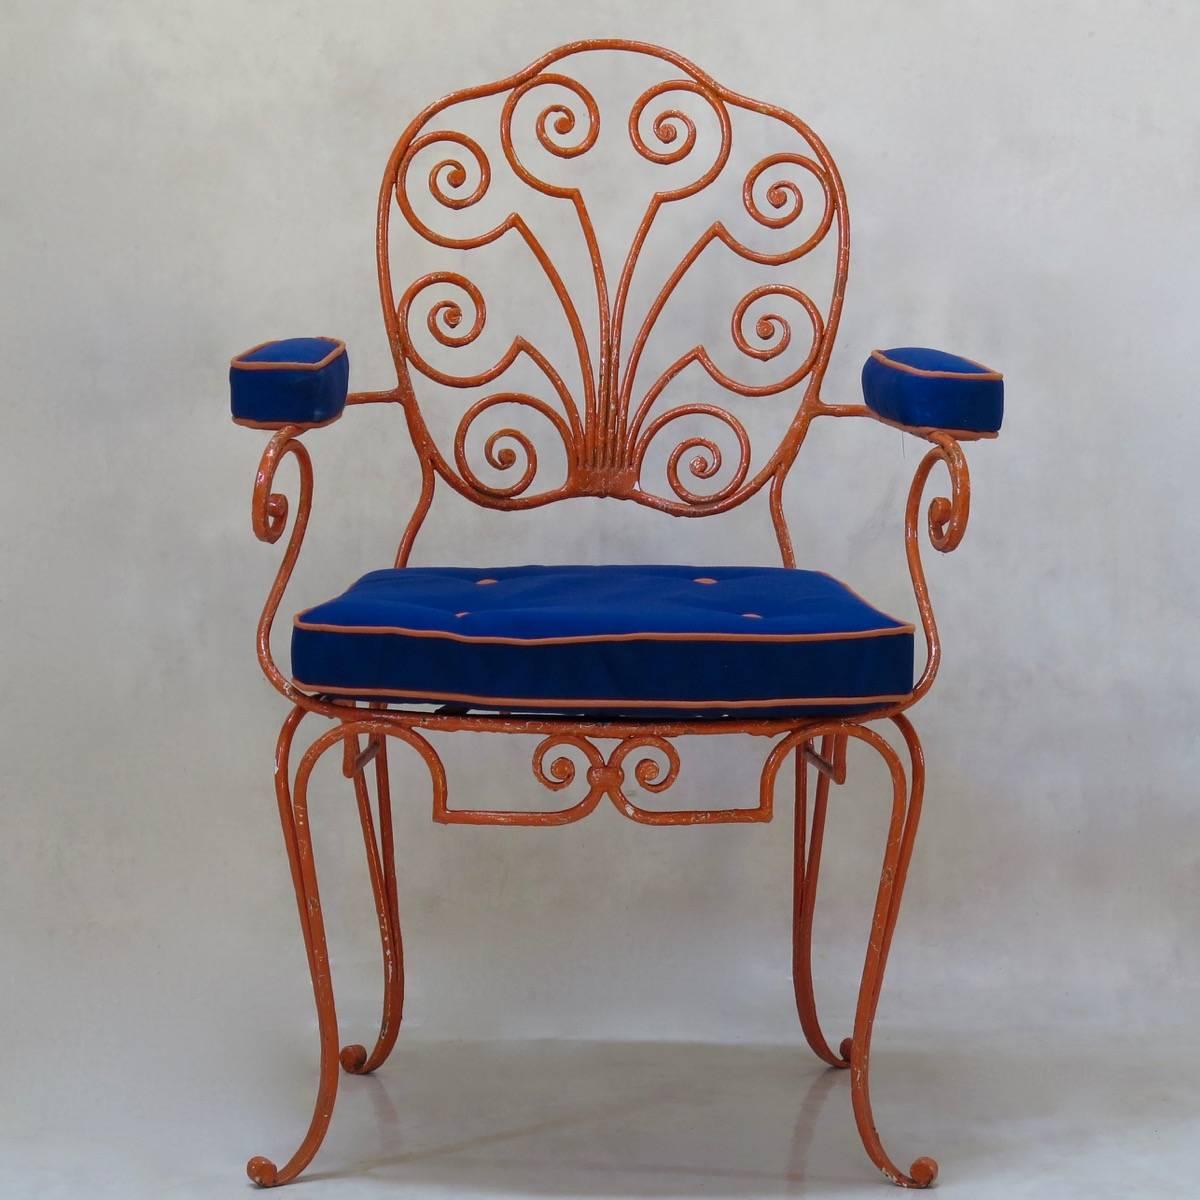 Dieses Set aus acht schmiedeeisernen Sesseln ist von schöner Qualität und Design und stellt eine Interpretation des Louis XV-Stils der 1940er Jahre dar. Die Rückseiten der Schilde sind sanft geschwungen und mit einem hübschen, verschnörkelten Muster